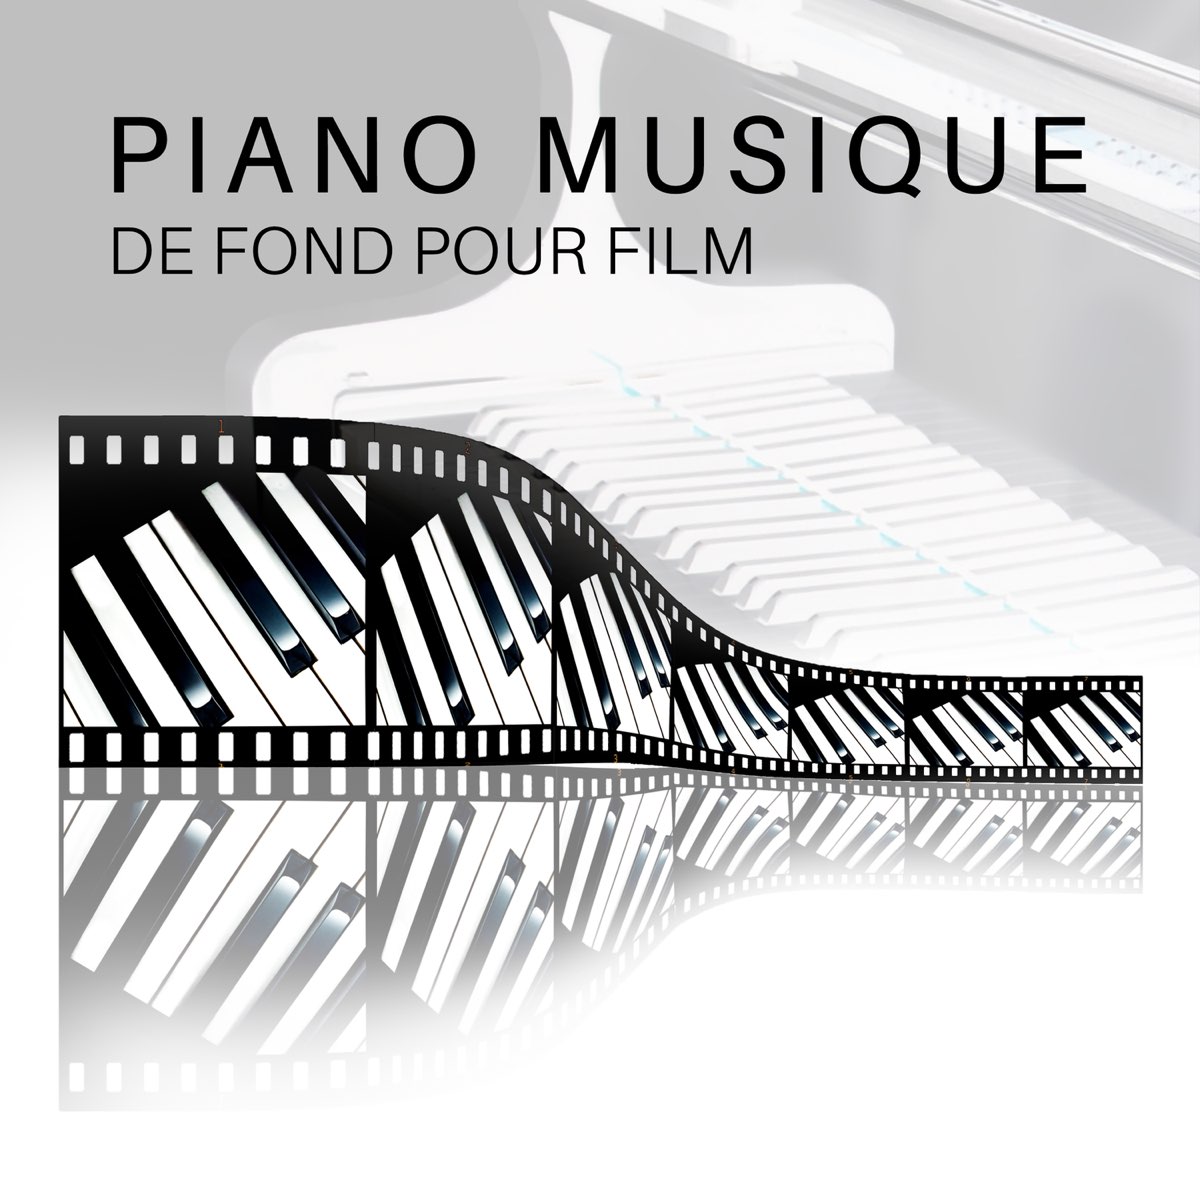 Piano musique de fond pour film - Court métrage, sans paroles, relaxation,  musique emotional et touchant” álbum de Piano bar musique masters en Apple  Music